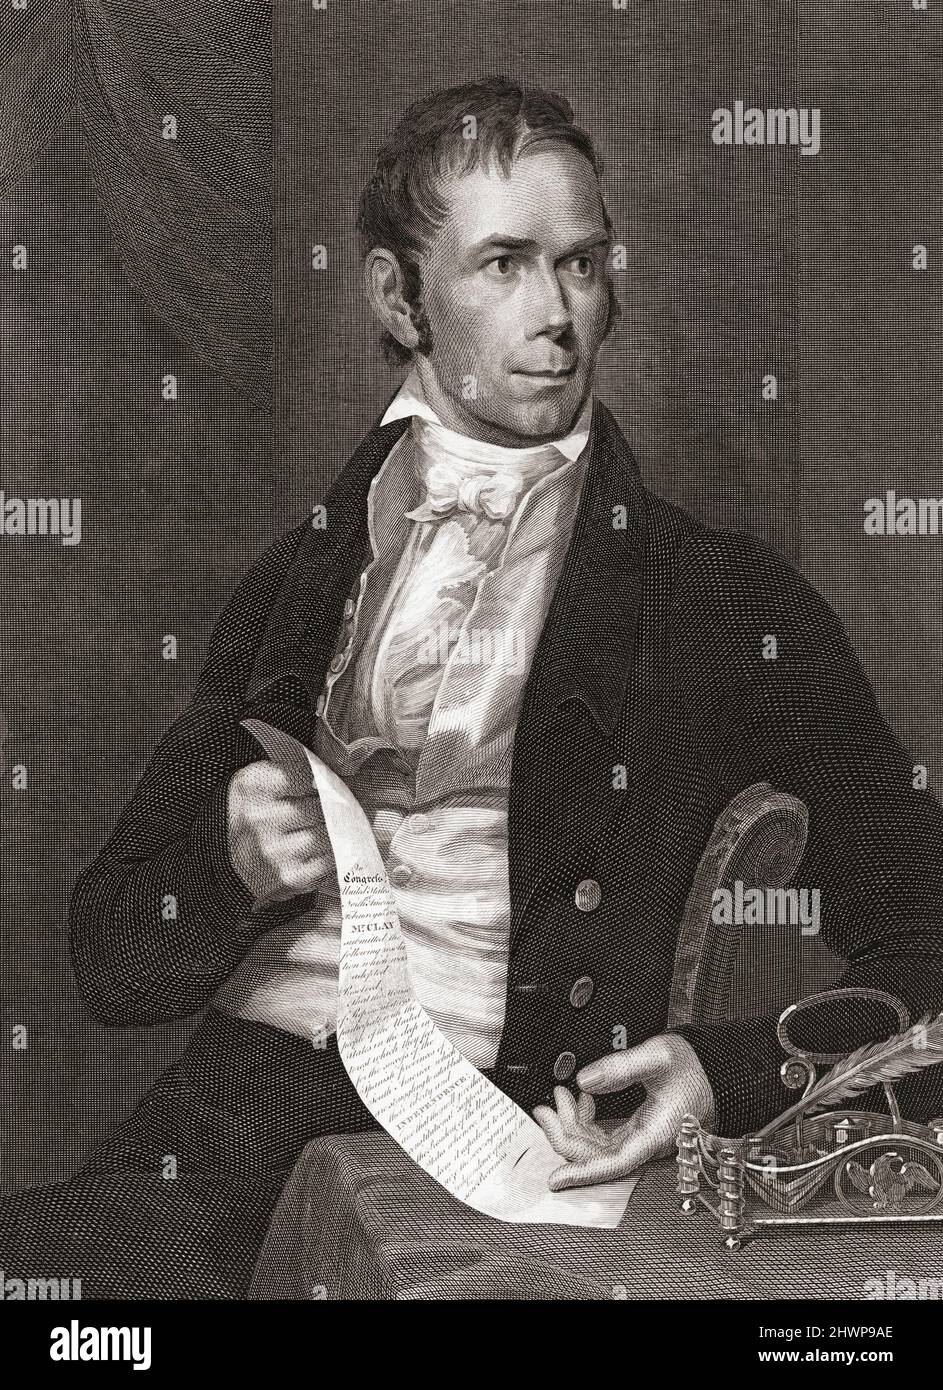 Henry Clay, 1777 - 1852. Amerikanischer Staatsmann und Redner, der 9. Außenminister der Vereinigten Staaten wurde. Stich von 1822 von Peter Maverick nach einem Gemälde von Charles Bird King. Stockfoto